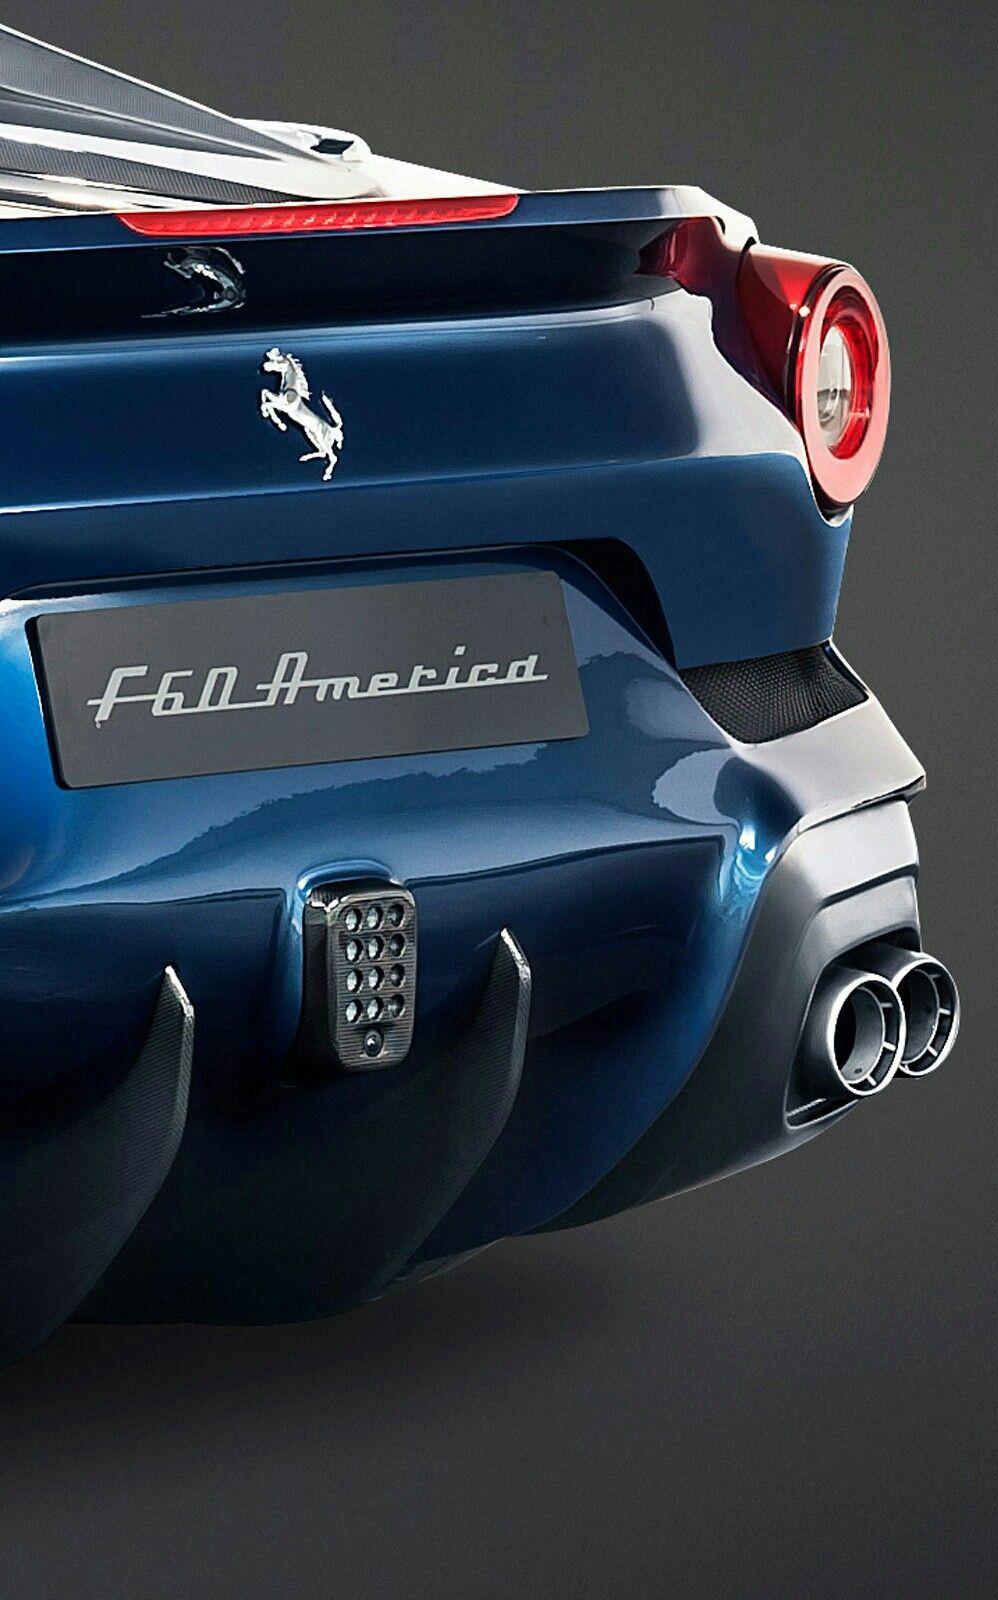 Ferrari F60 America. I Ferrari. Ferrari, Cars